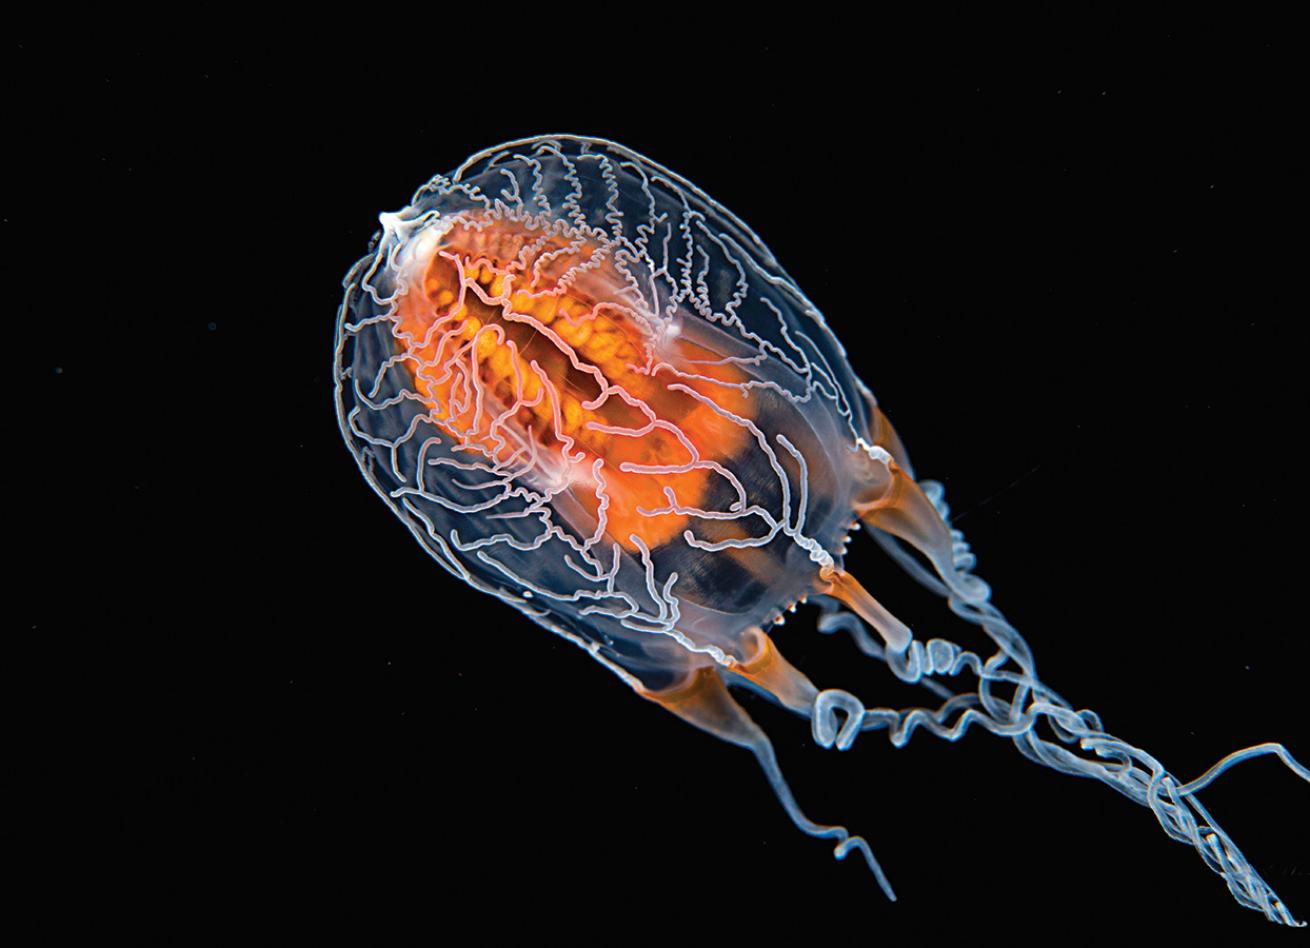 Tiny glowing creature underwater Tahiti Black Water